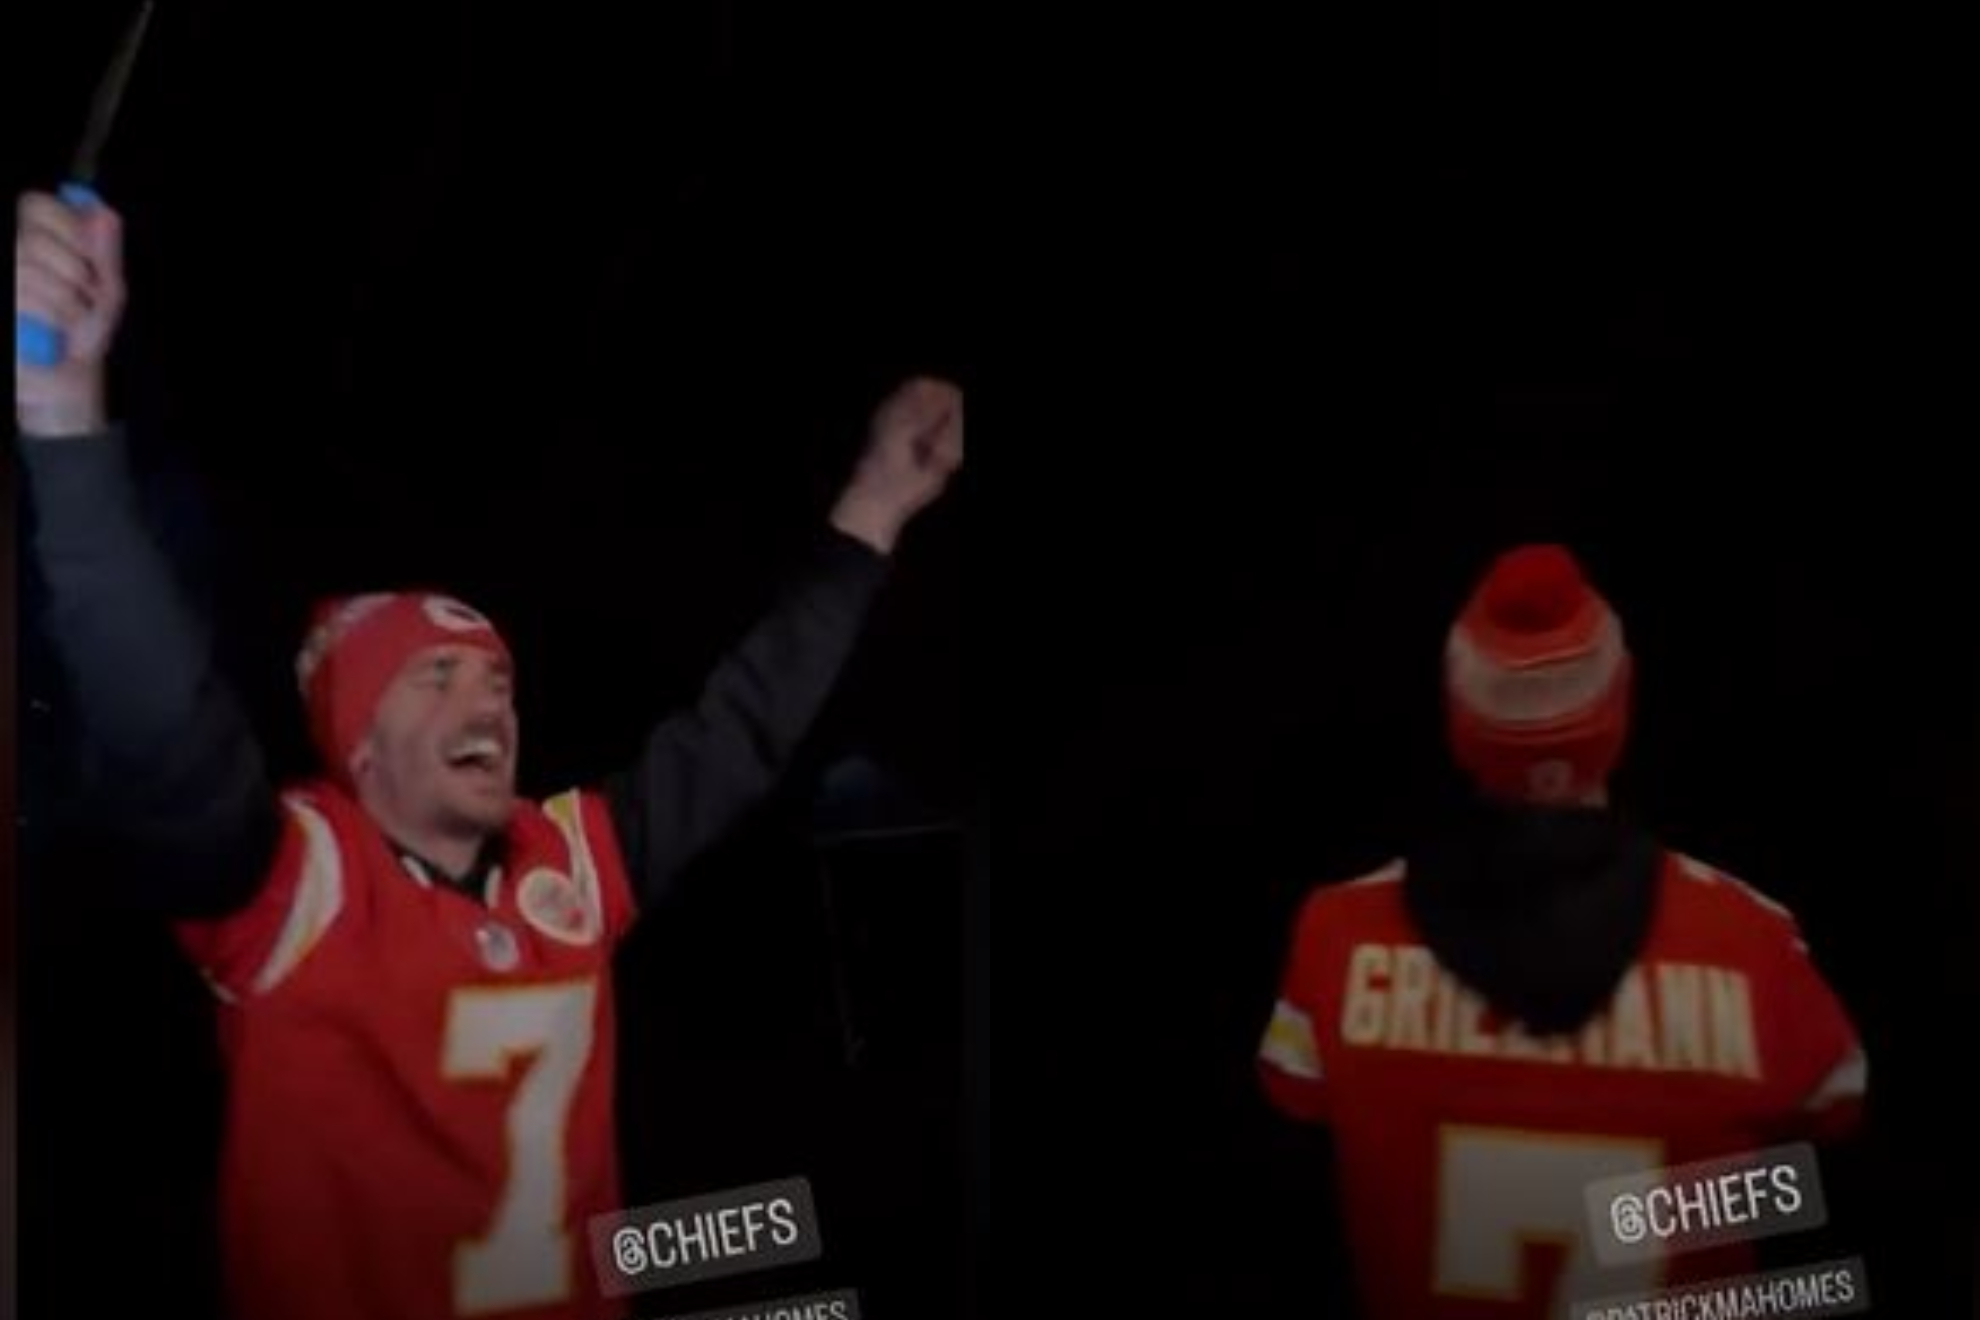 La locura de Griezmann celebrando la Super Bowl de los Chiefs con pirotecnia incluida